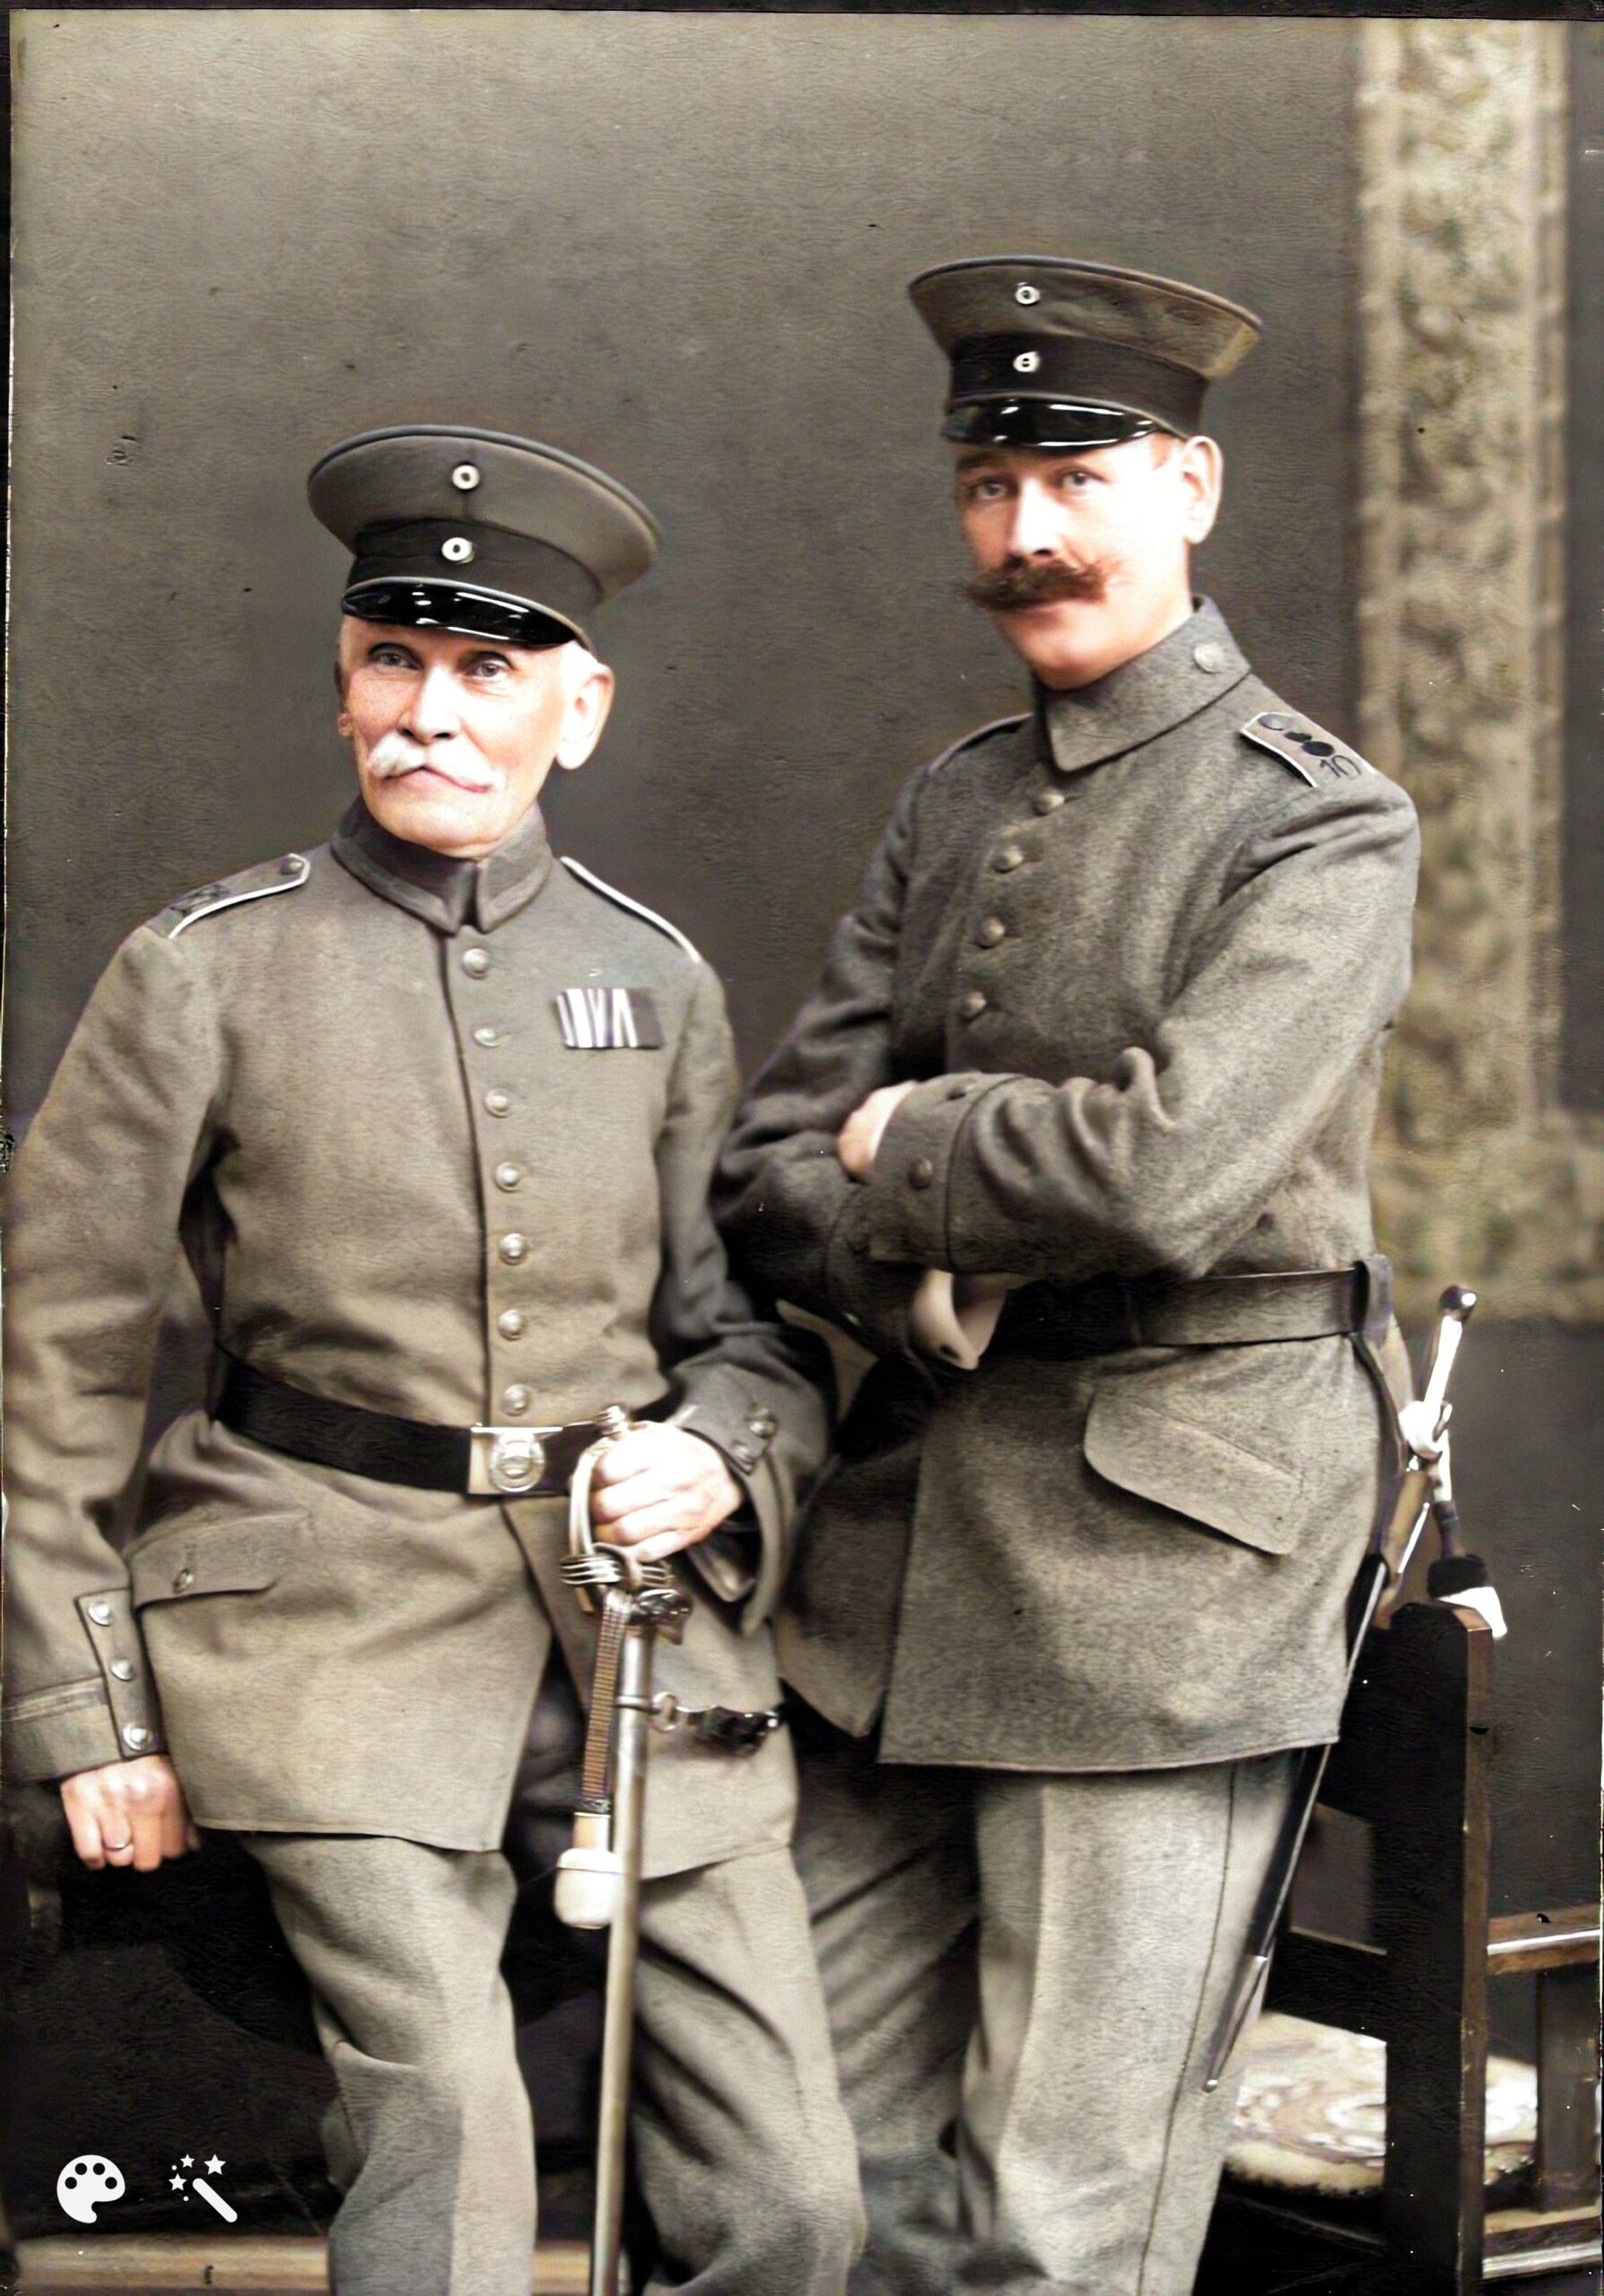 Mon arrière-grand-père Hermann Hartmann (à gauche) et mon grand-oncle Franz Hartmann, le frère aîné de Hermann, vers 1915. Photo améliorée par MyHeritage.